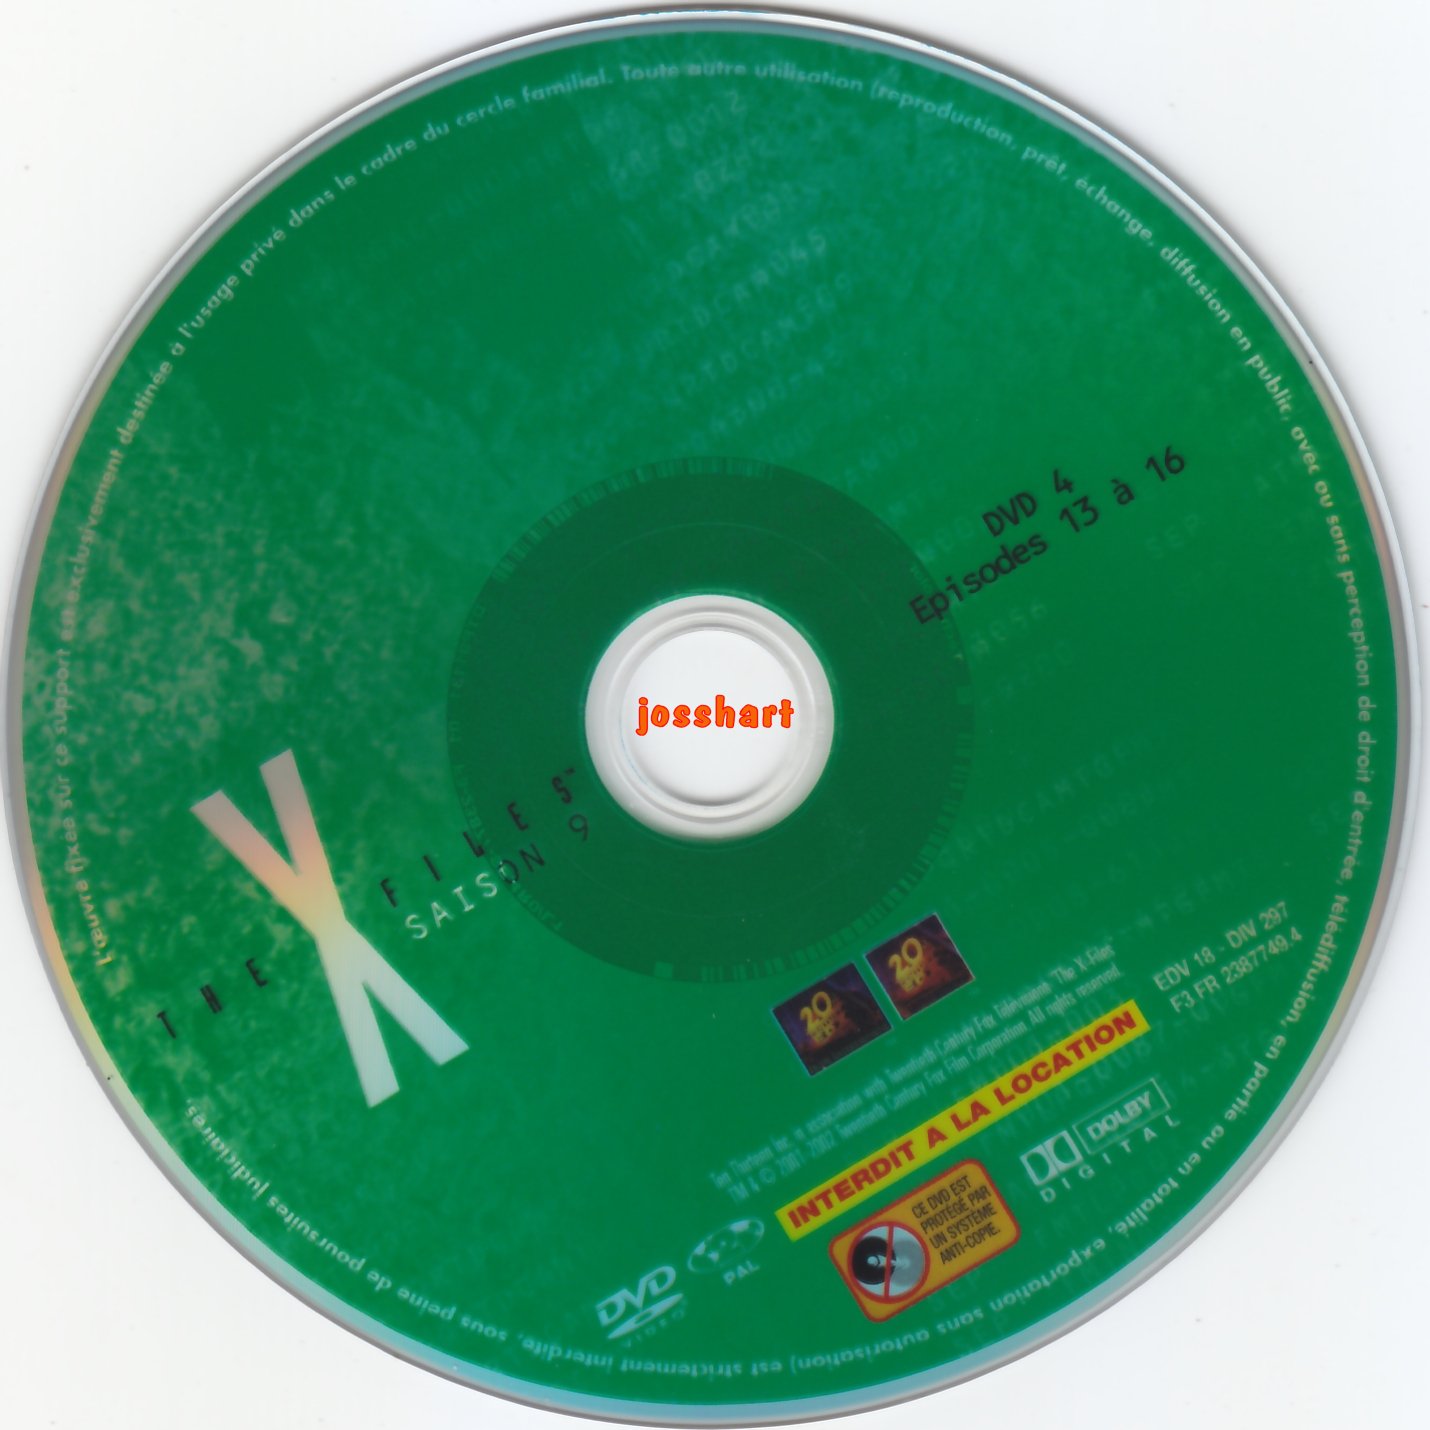 The X Files Saison 9 DVD 4 v2